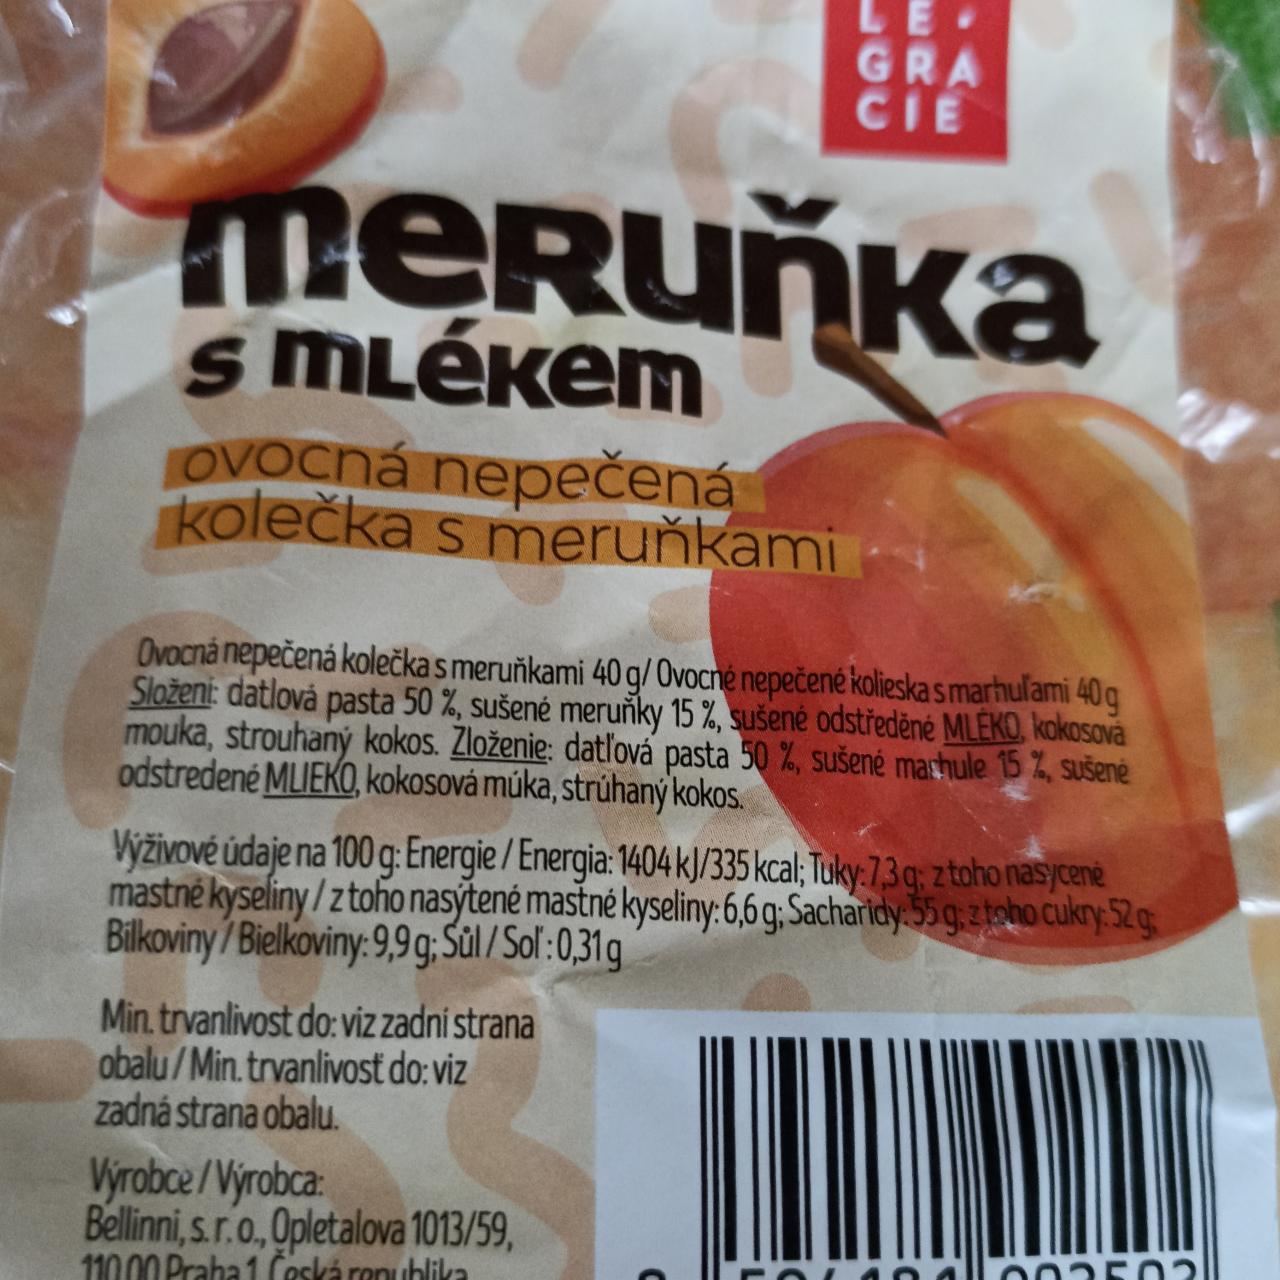 Fotografie - Meruňka s mlékem ovocná nepečená kolečka s meruňkami LeGracie